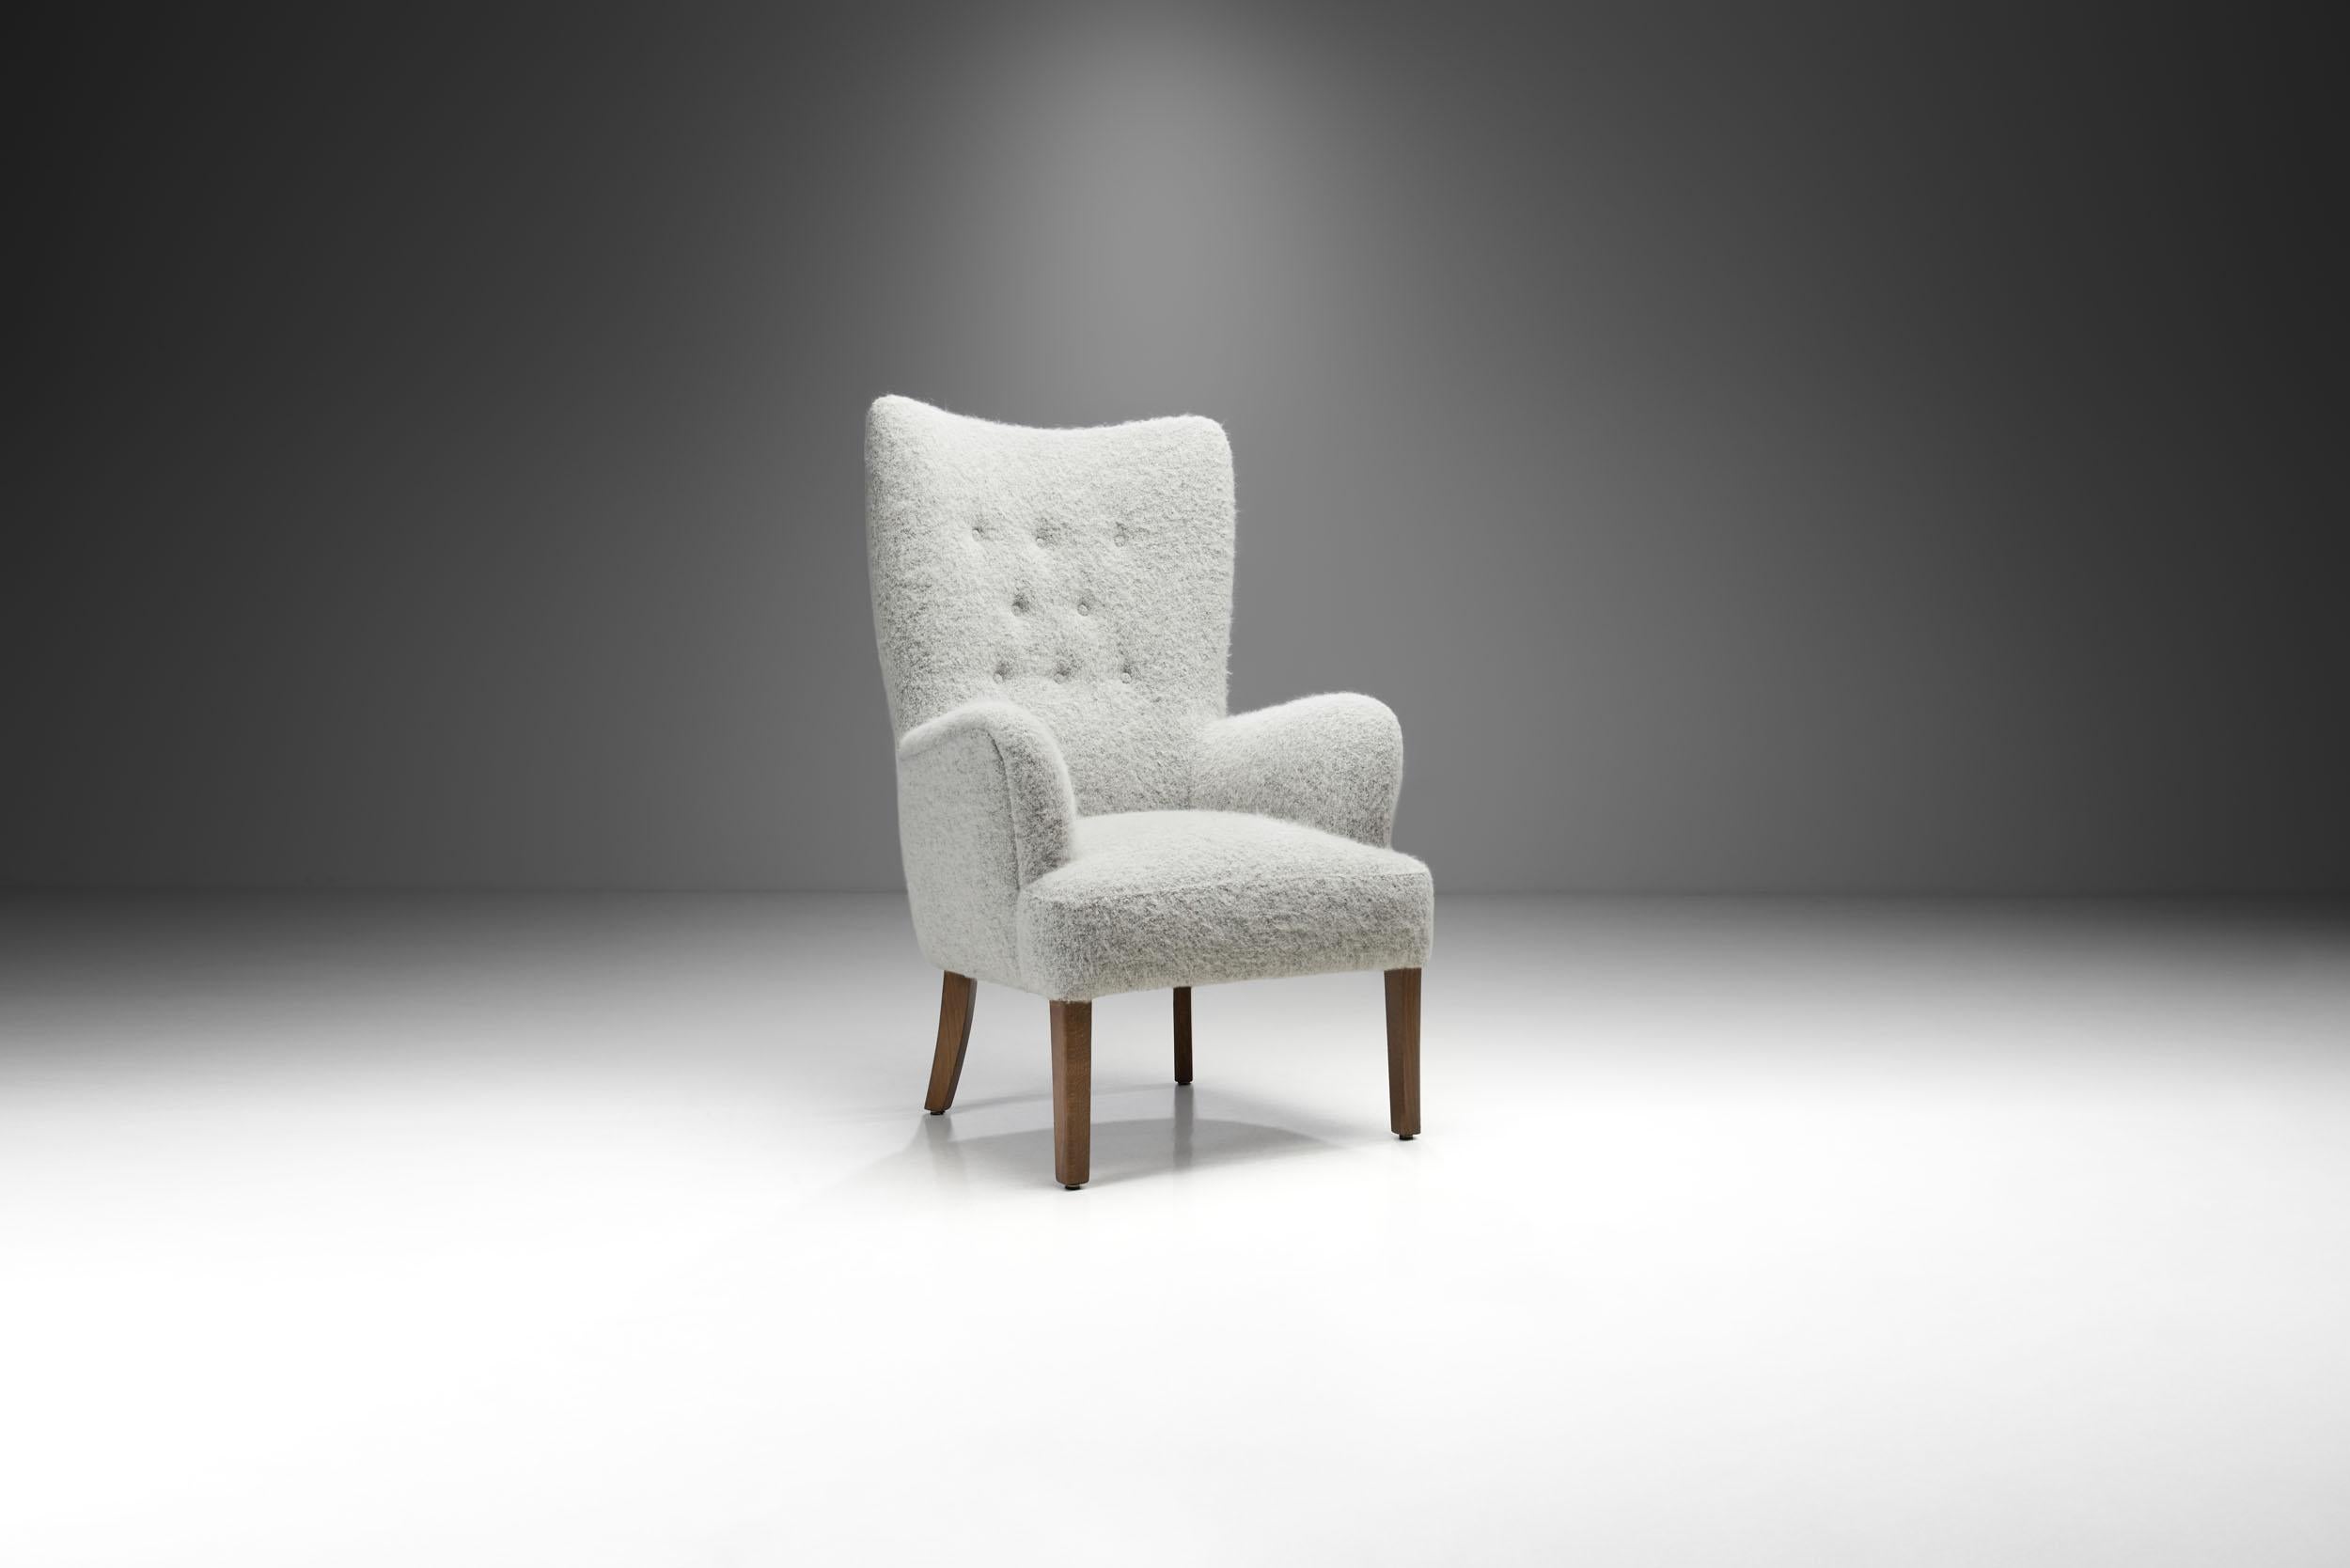 Die schlichte und raffinierte Ästhetik dieses Stuhls geht auf Ole Wanschers Neuerfindung klassischer Formen zurück, für die er zu einem der Hauptakteure der dänischen Mid-Century-Bewegung wurde.

In diesem Modell hat Wanscher sein Designtalent mit